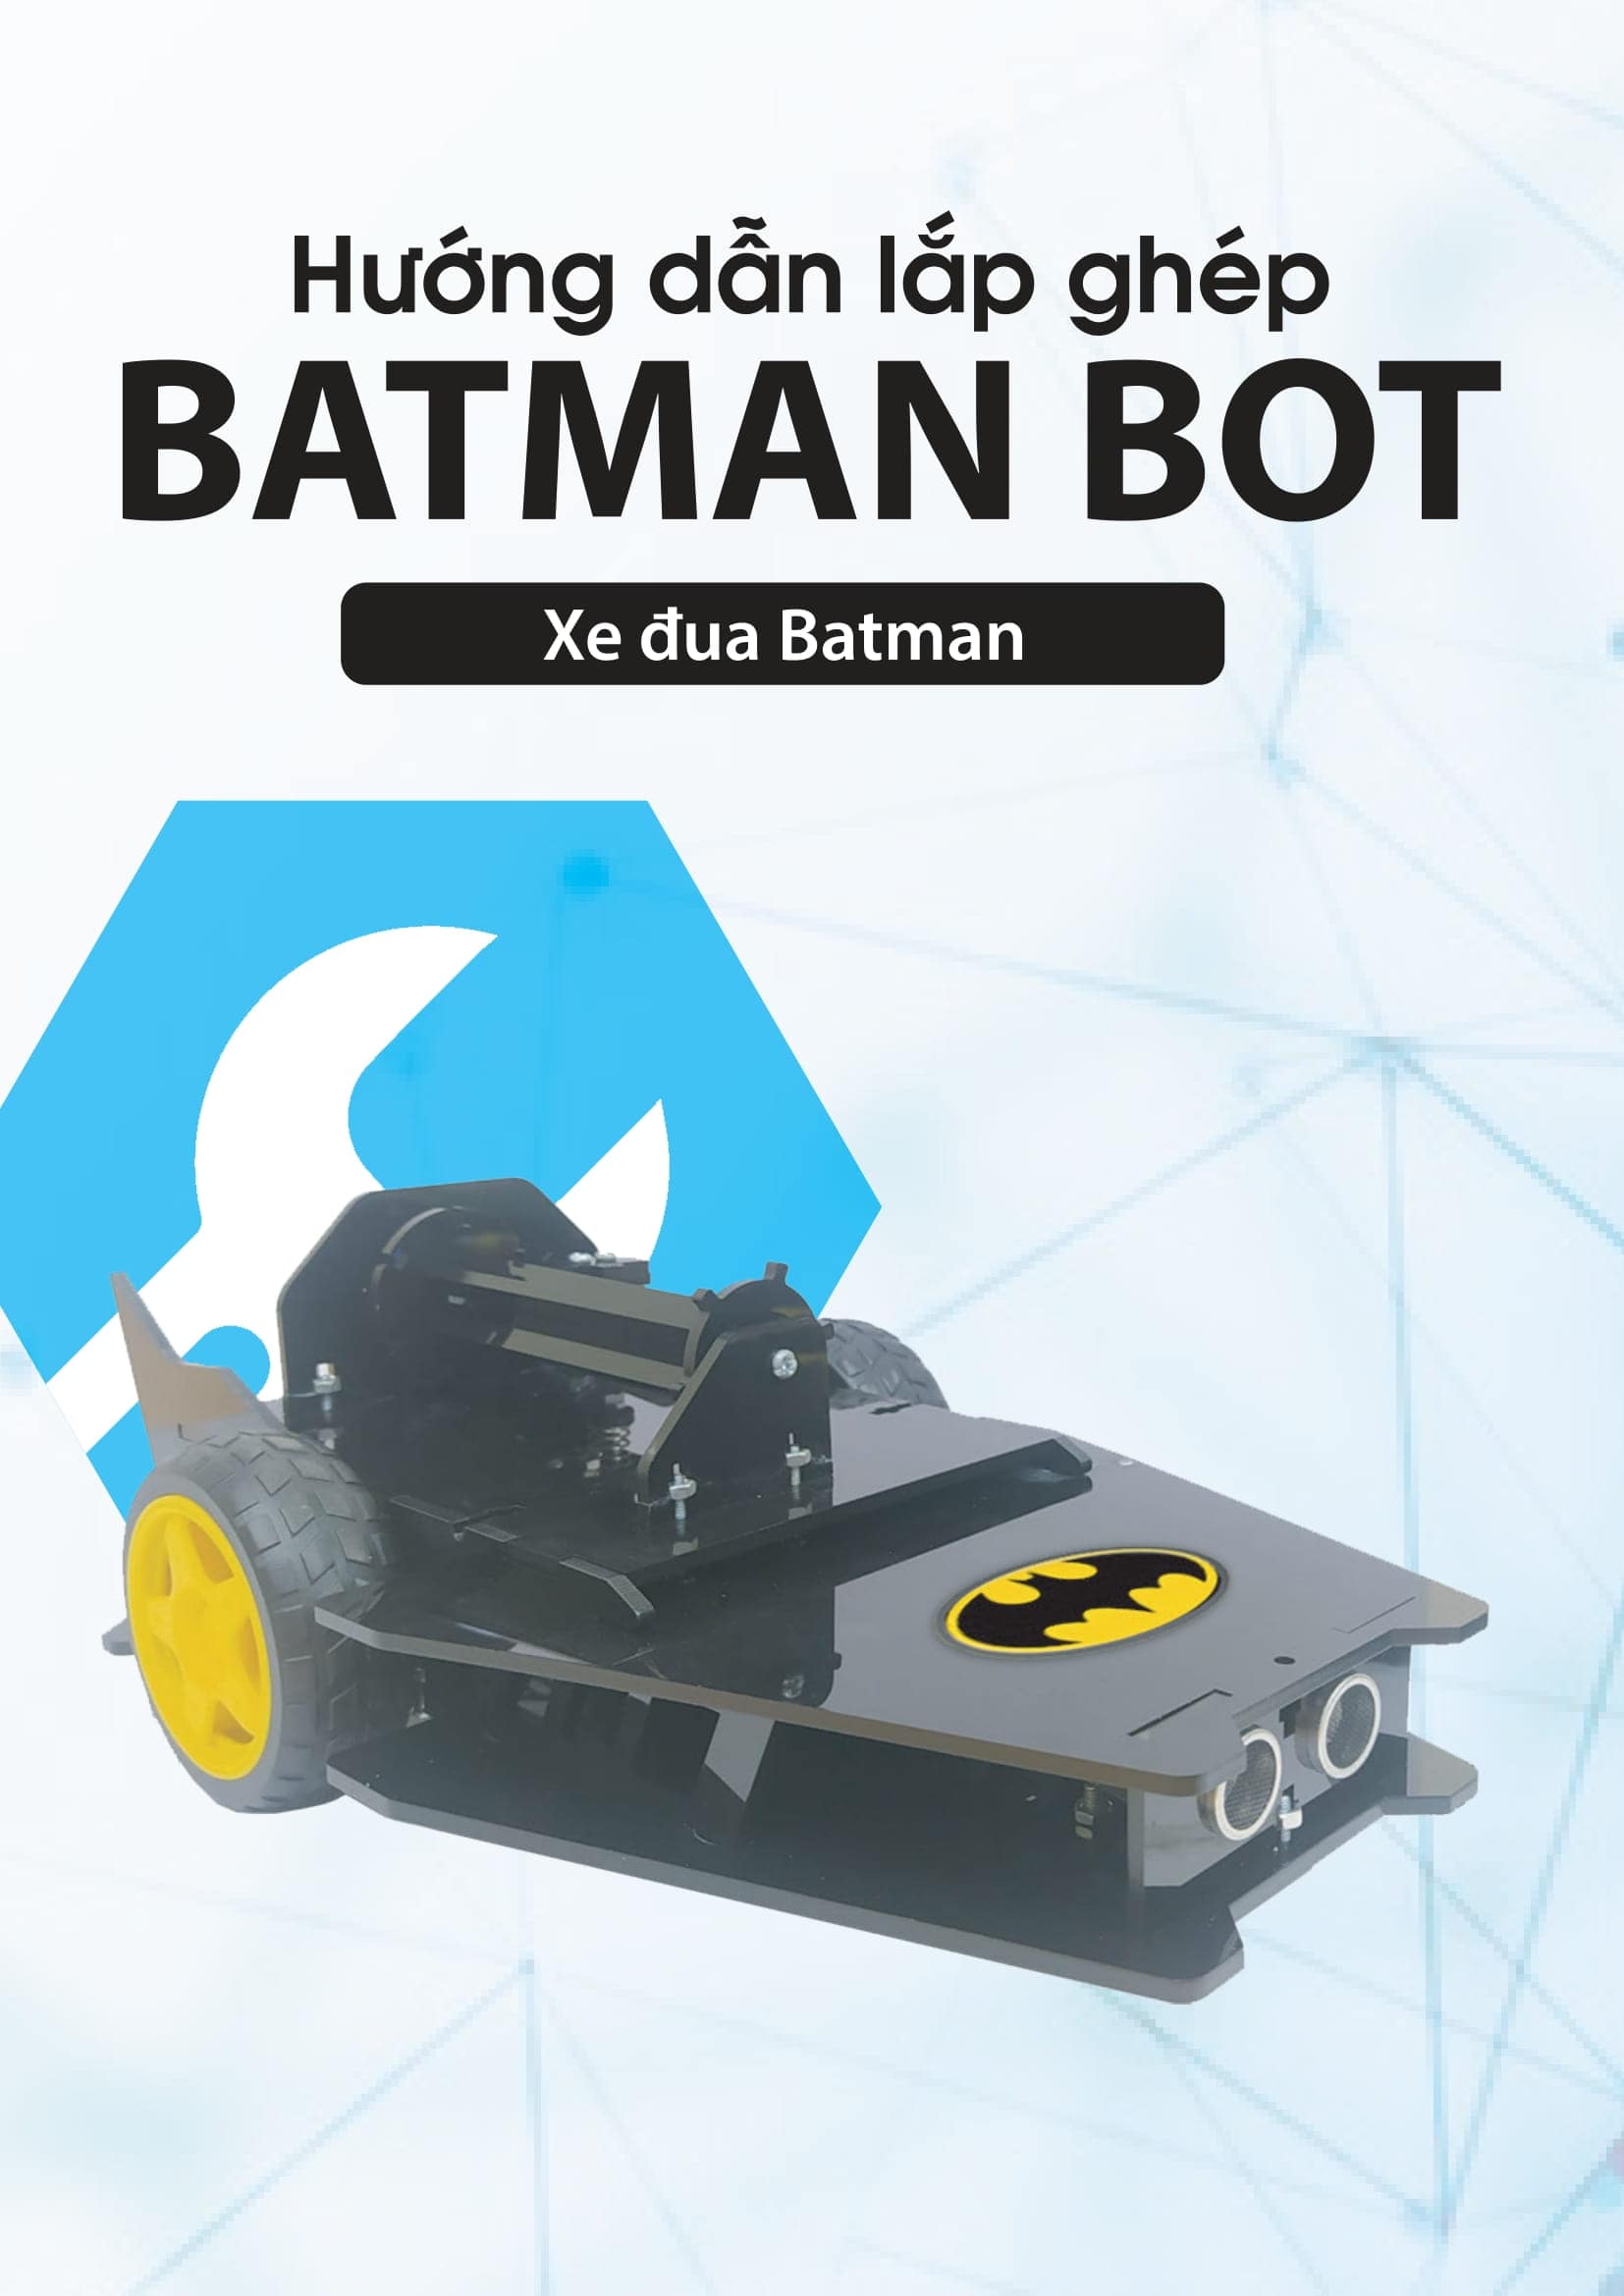 Hướng dẫn lập trình BatmanBot